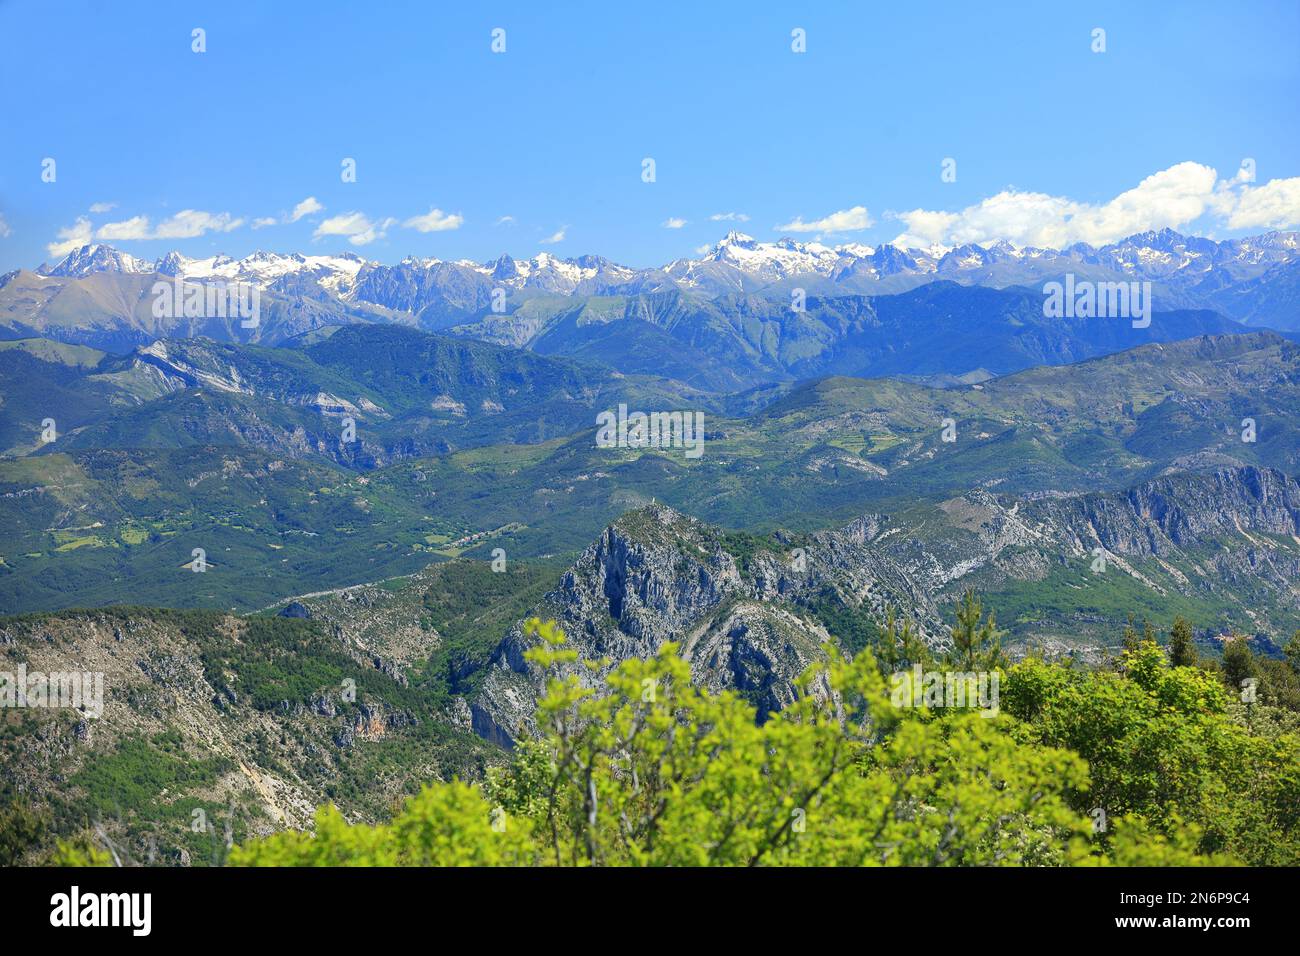 Paysage aux alentours de Thorenc, Parc regional des prealpes d'Azur, Alpes Maritimes, 06, Cote d'Azur, Frankreich Stockfoto